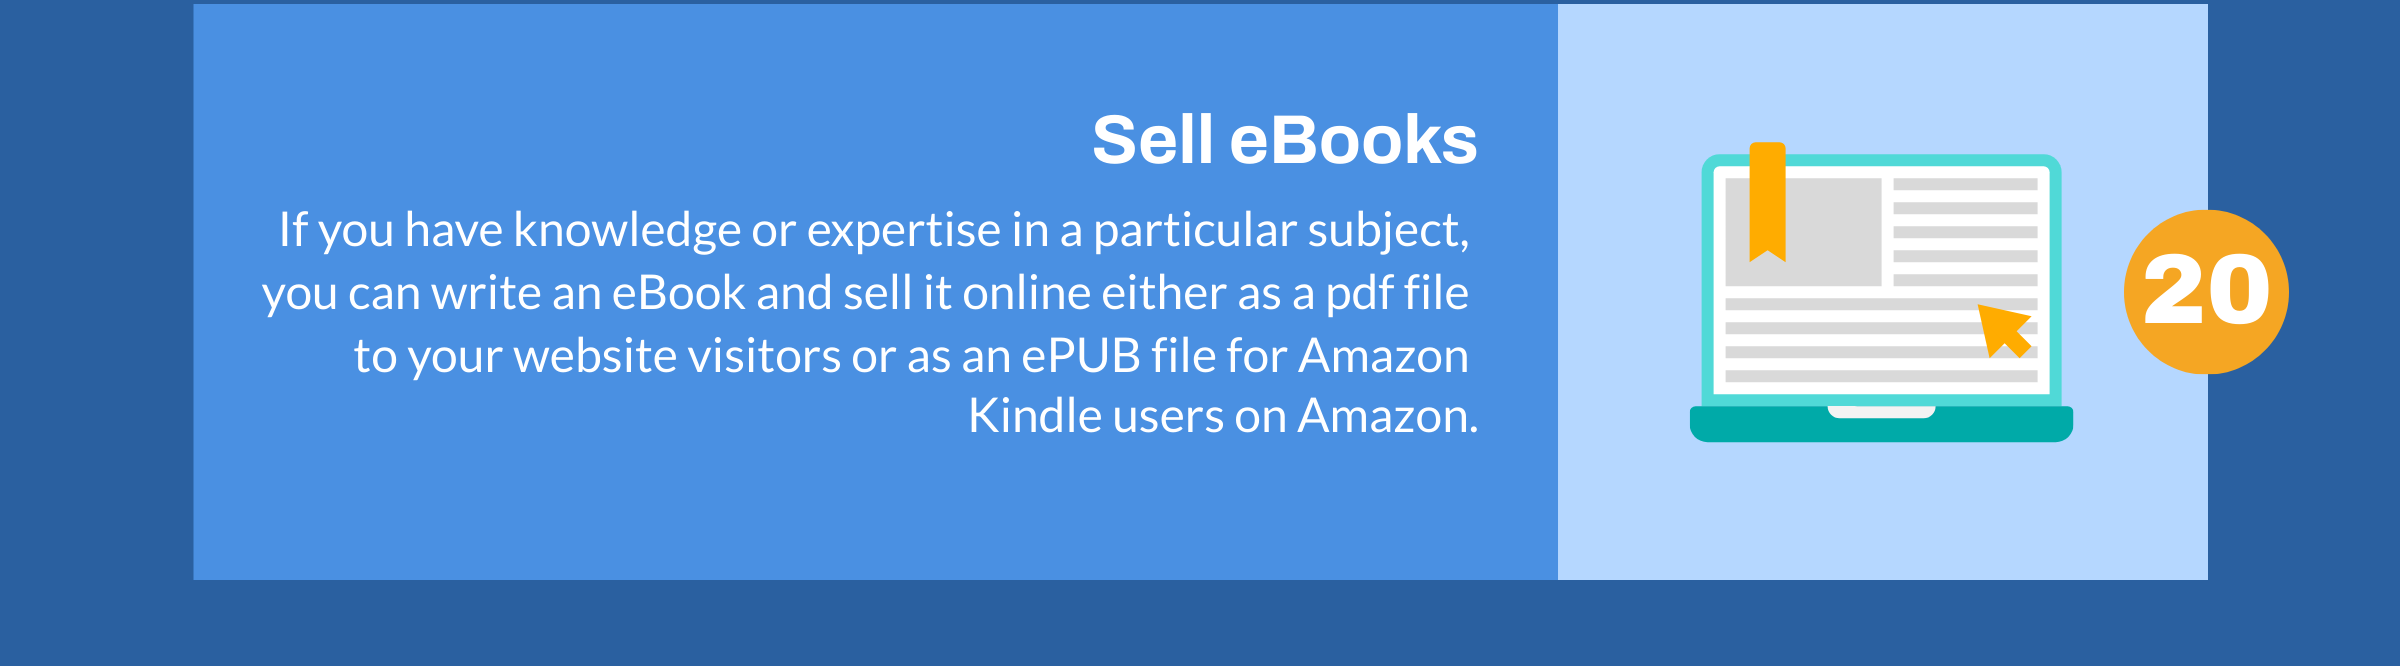 Afaceri de vânzare de cărți electronice